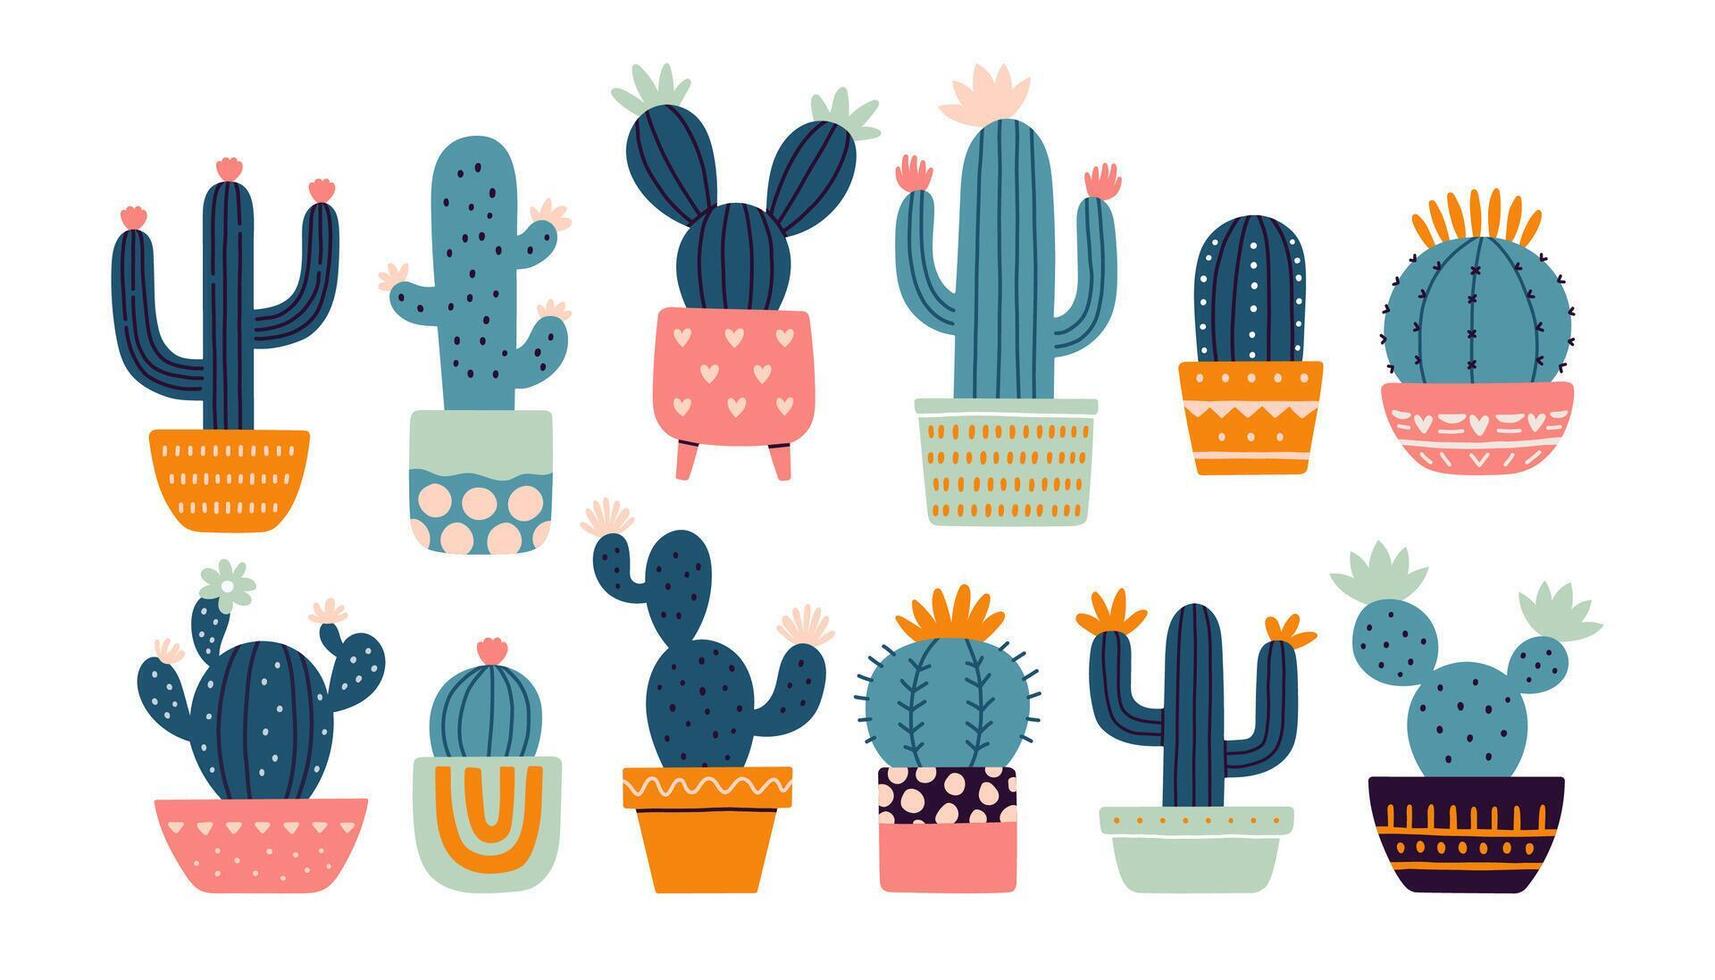 kaktus uppsättning. mexikansk kaktus i pott. öken- taggig växt, mexico kaktusar blomma och tropisk Hem växter eller arizona sommar klimat trädgård kaktusar. flora isolerat vektor klistermärken samling